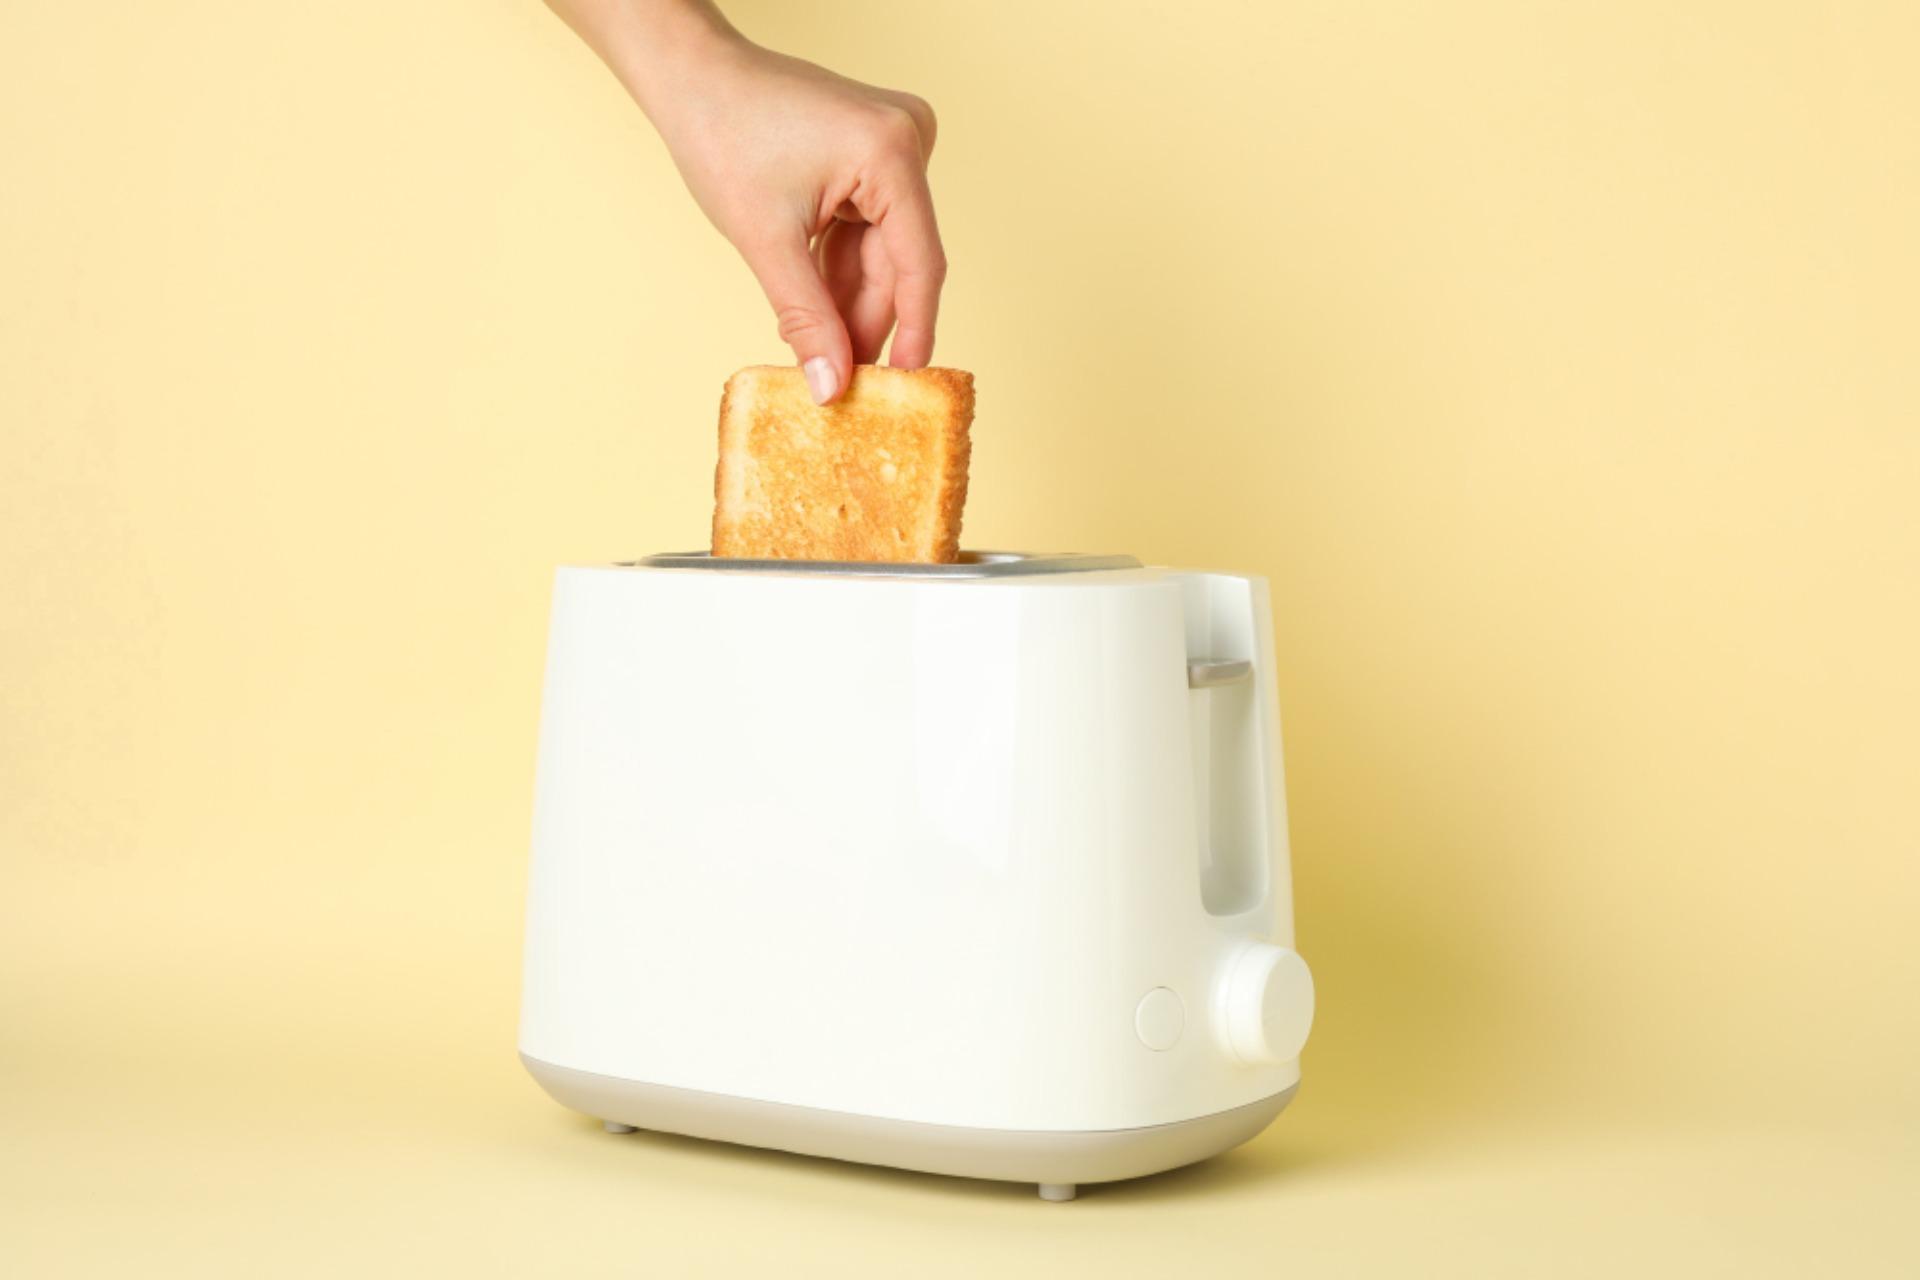 Sacchetti salva toast: uno strumento indispensabile a tutti	